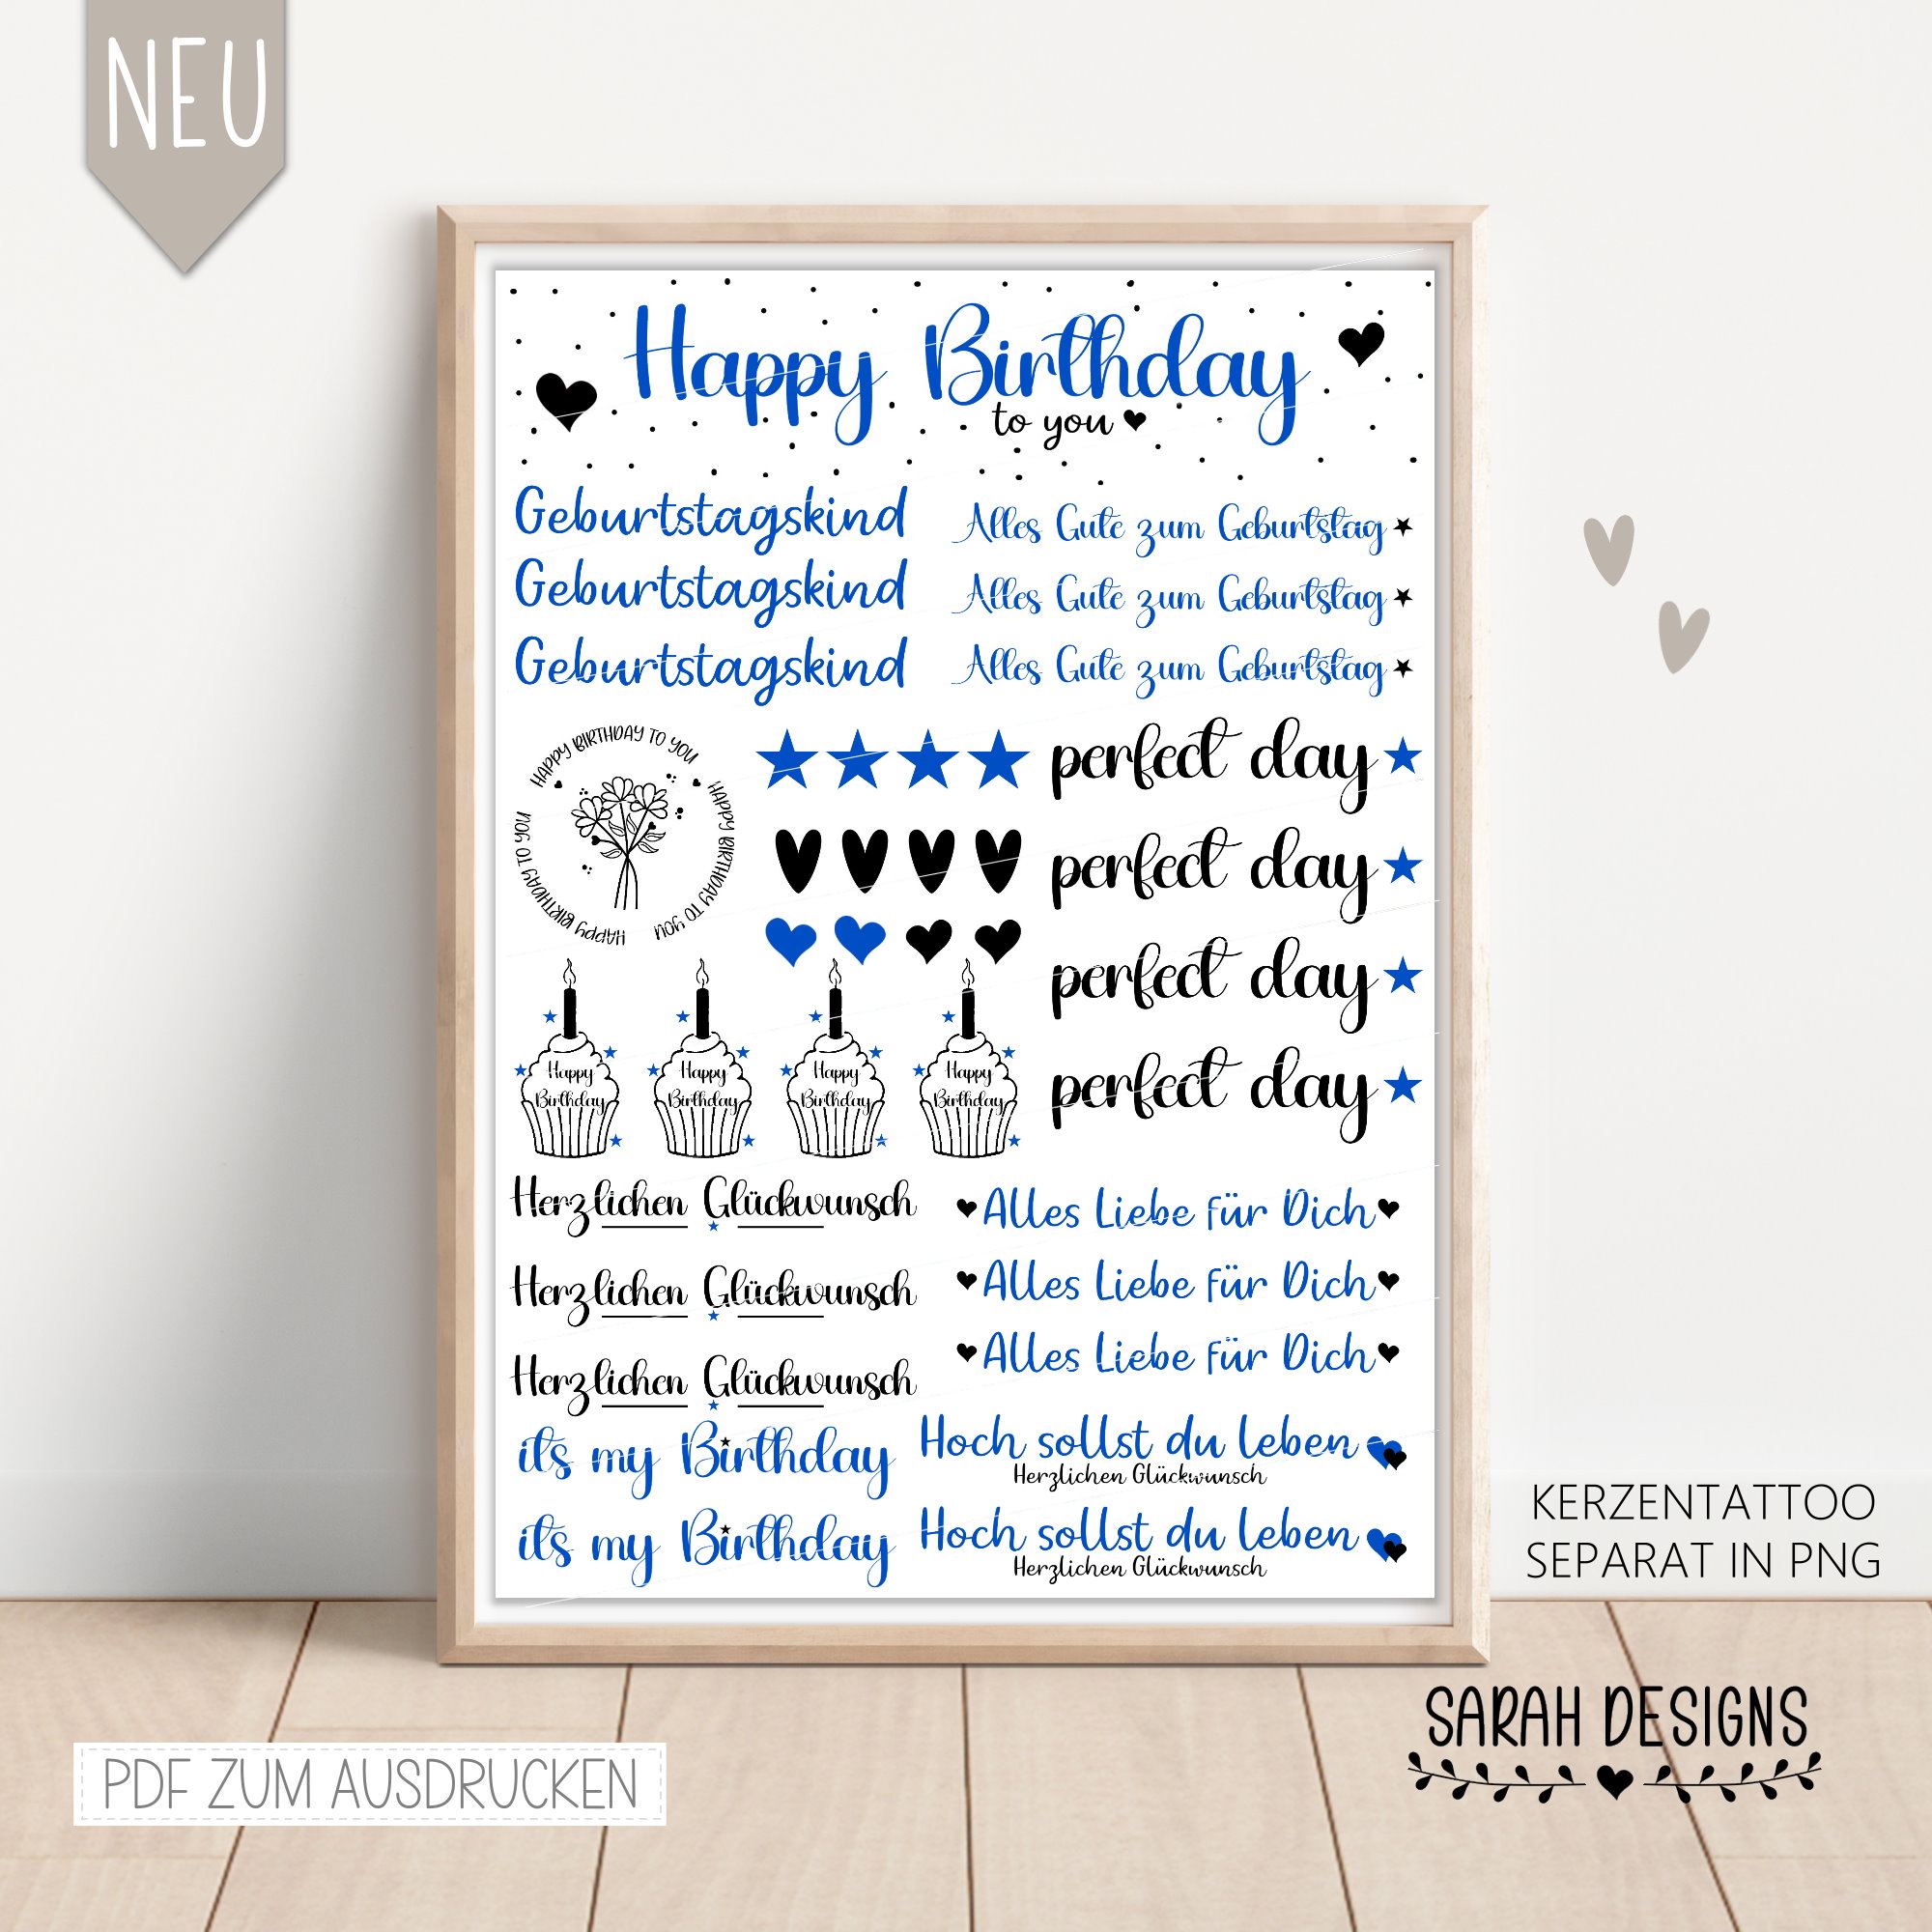 Kerzentattoo Happy Birthday in blau mit Sternchen und Herzchen Alles Liebe für dich und Hoch sollst du leben in PNG und pdf